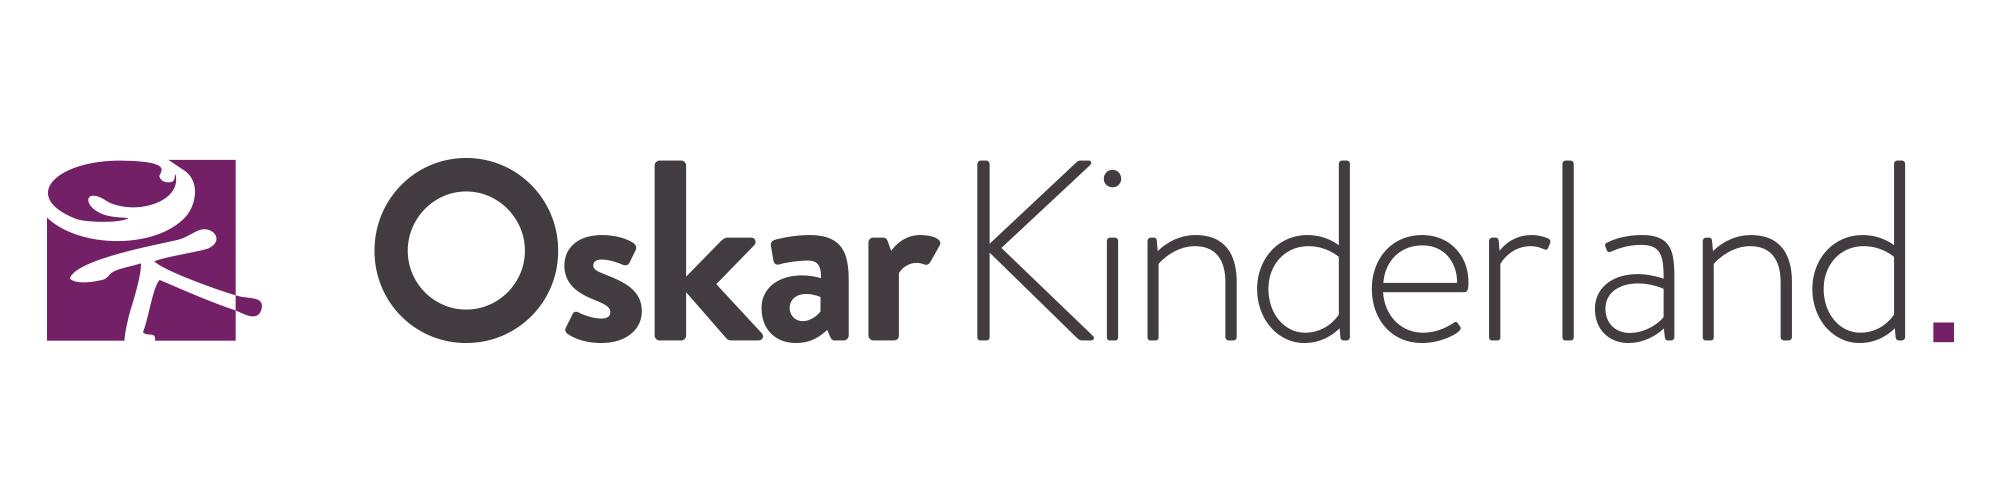 Oskar Kinderland GmbH & Co. KG